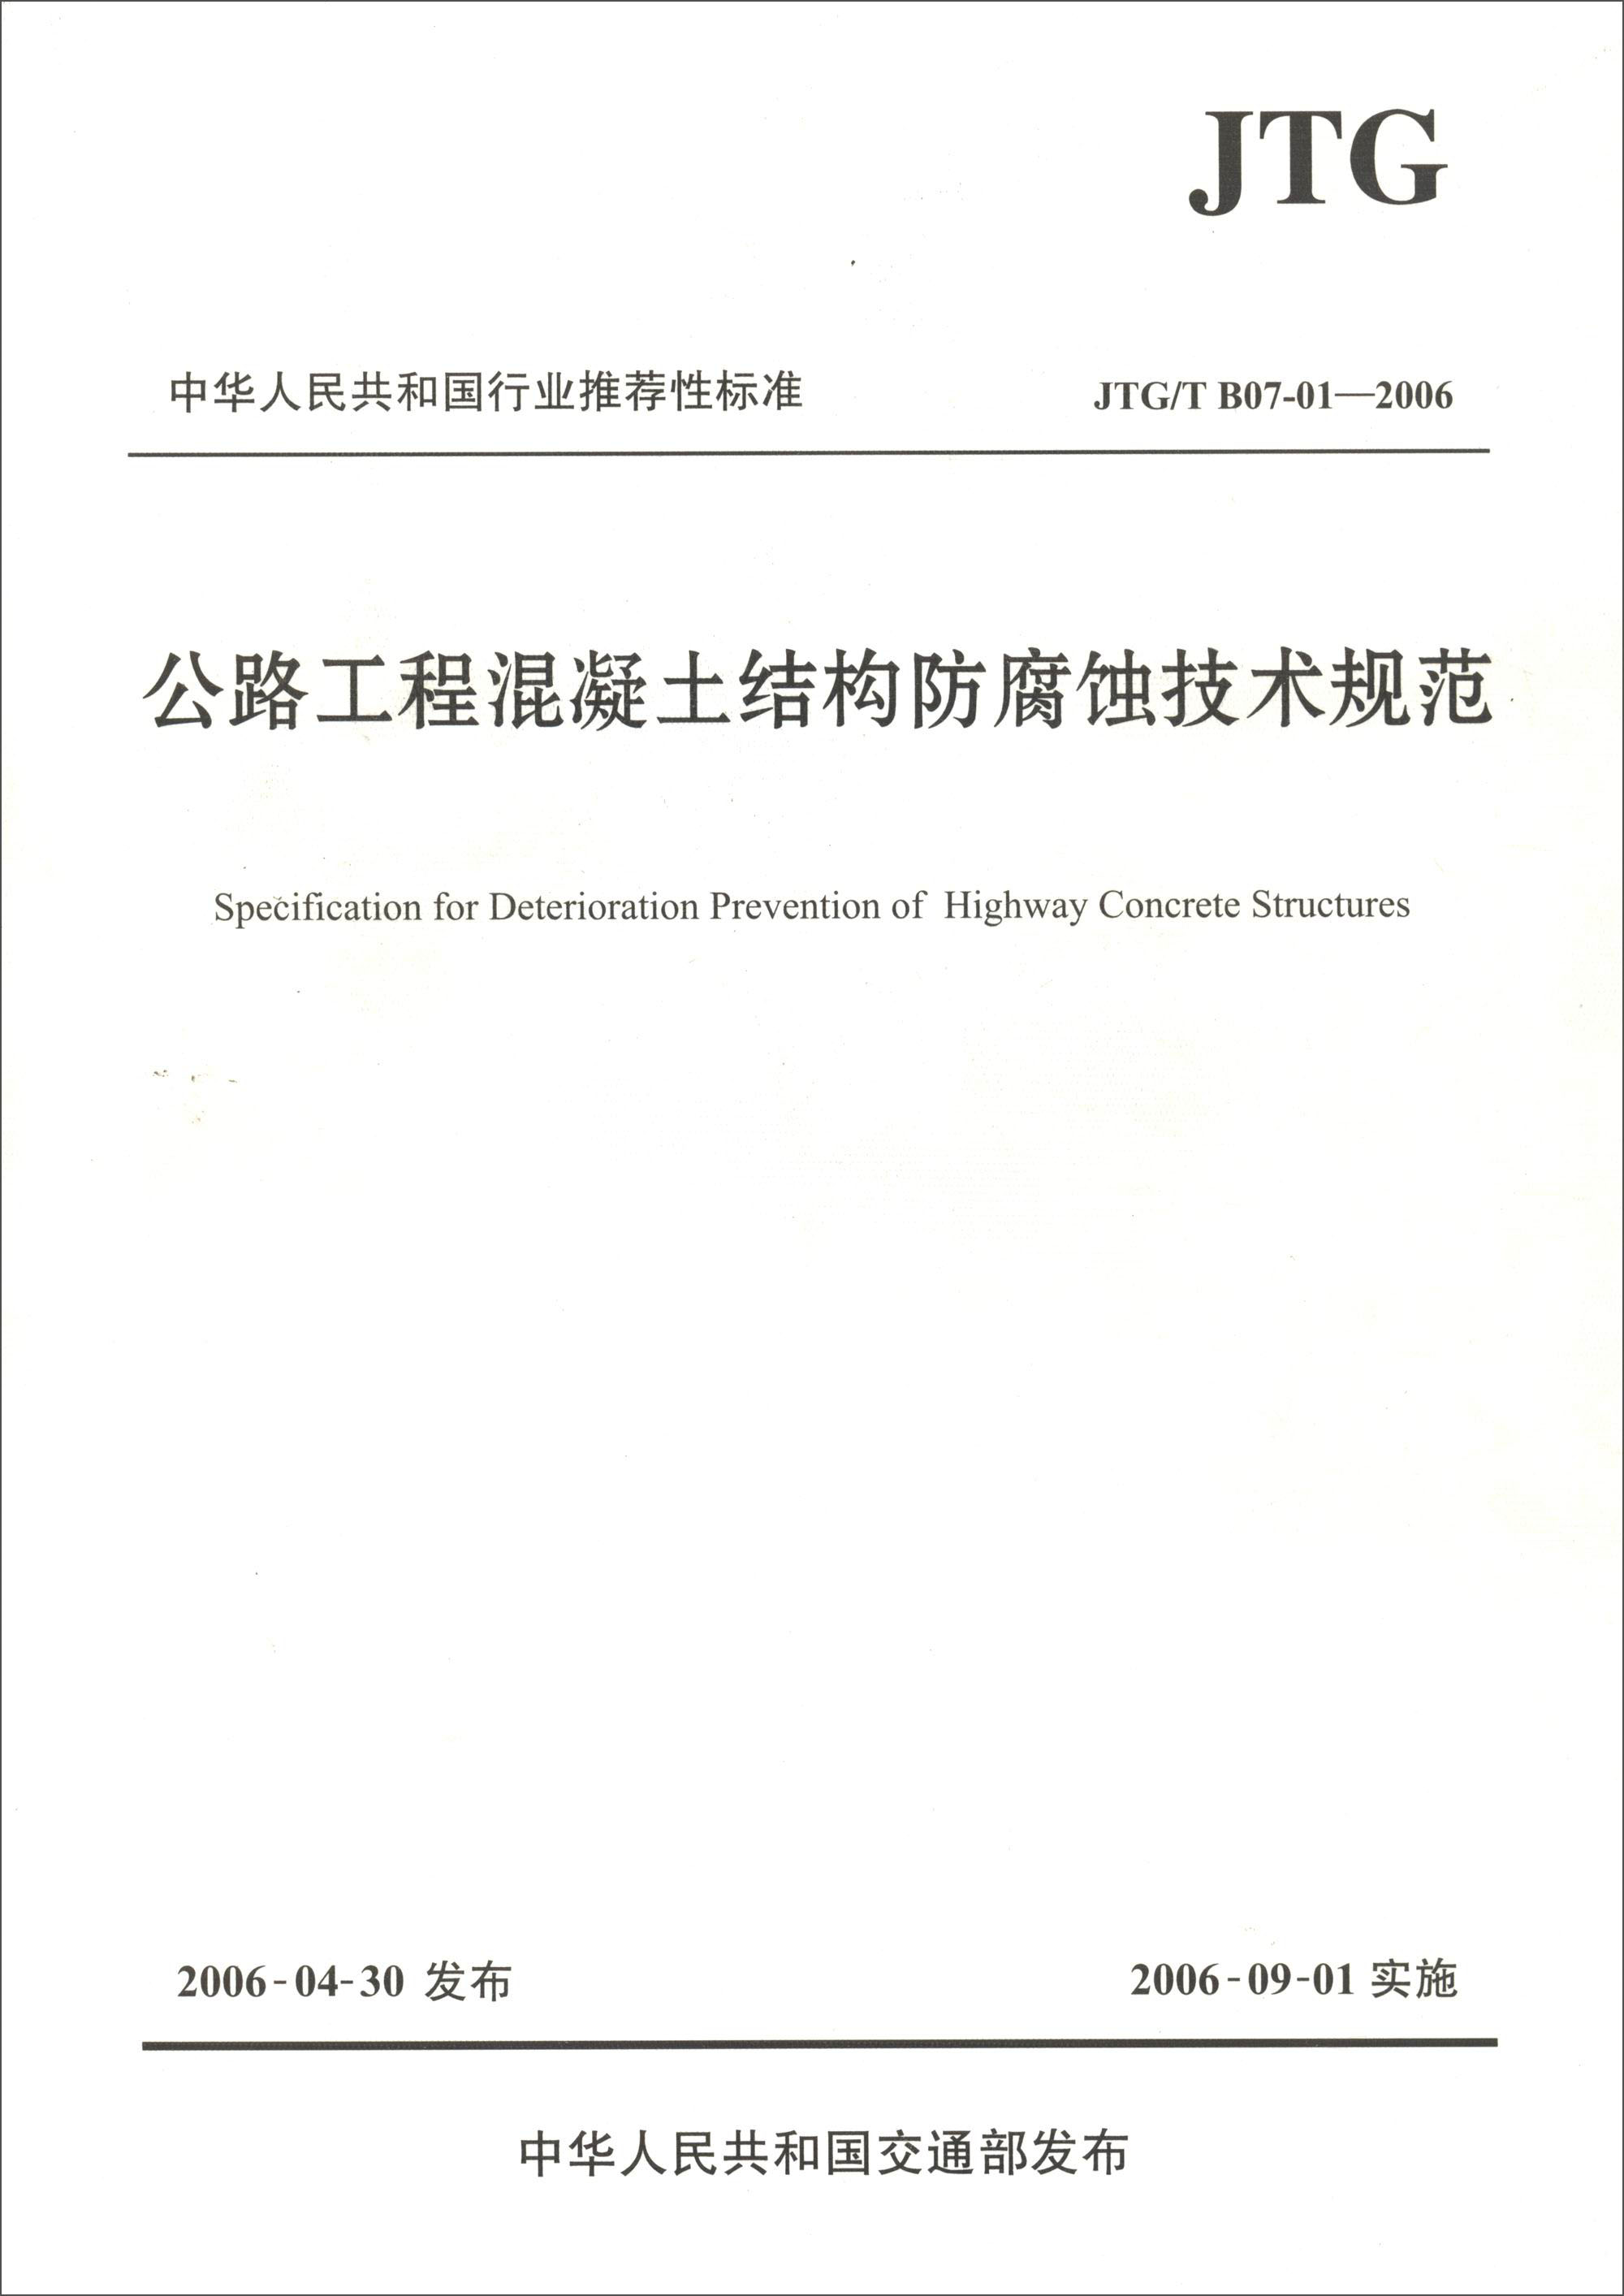 中华人民共和国行业推荐性标准（JTG/T B07-01—2006）：公路工程混凝土结构防腐蚀技术规范